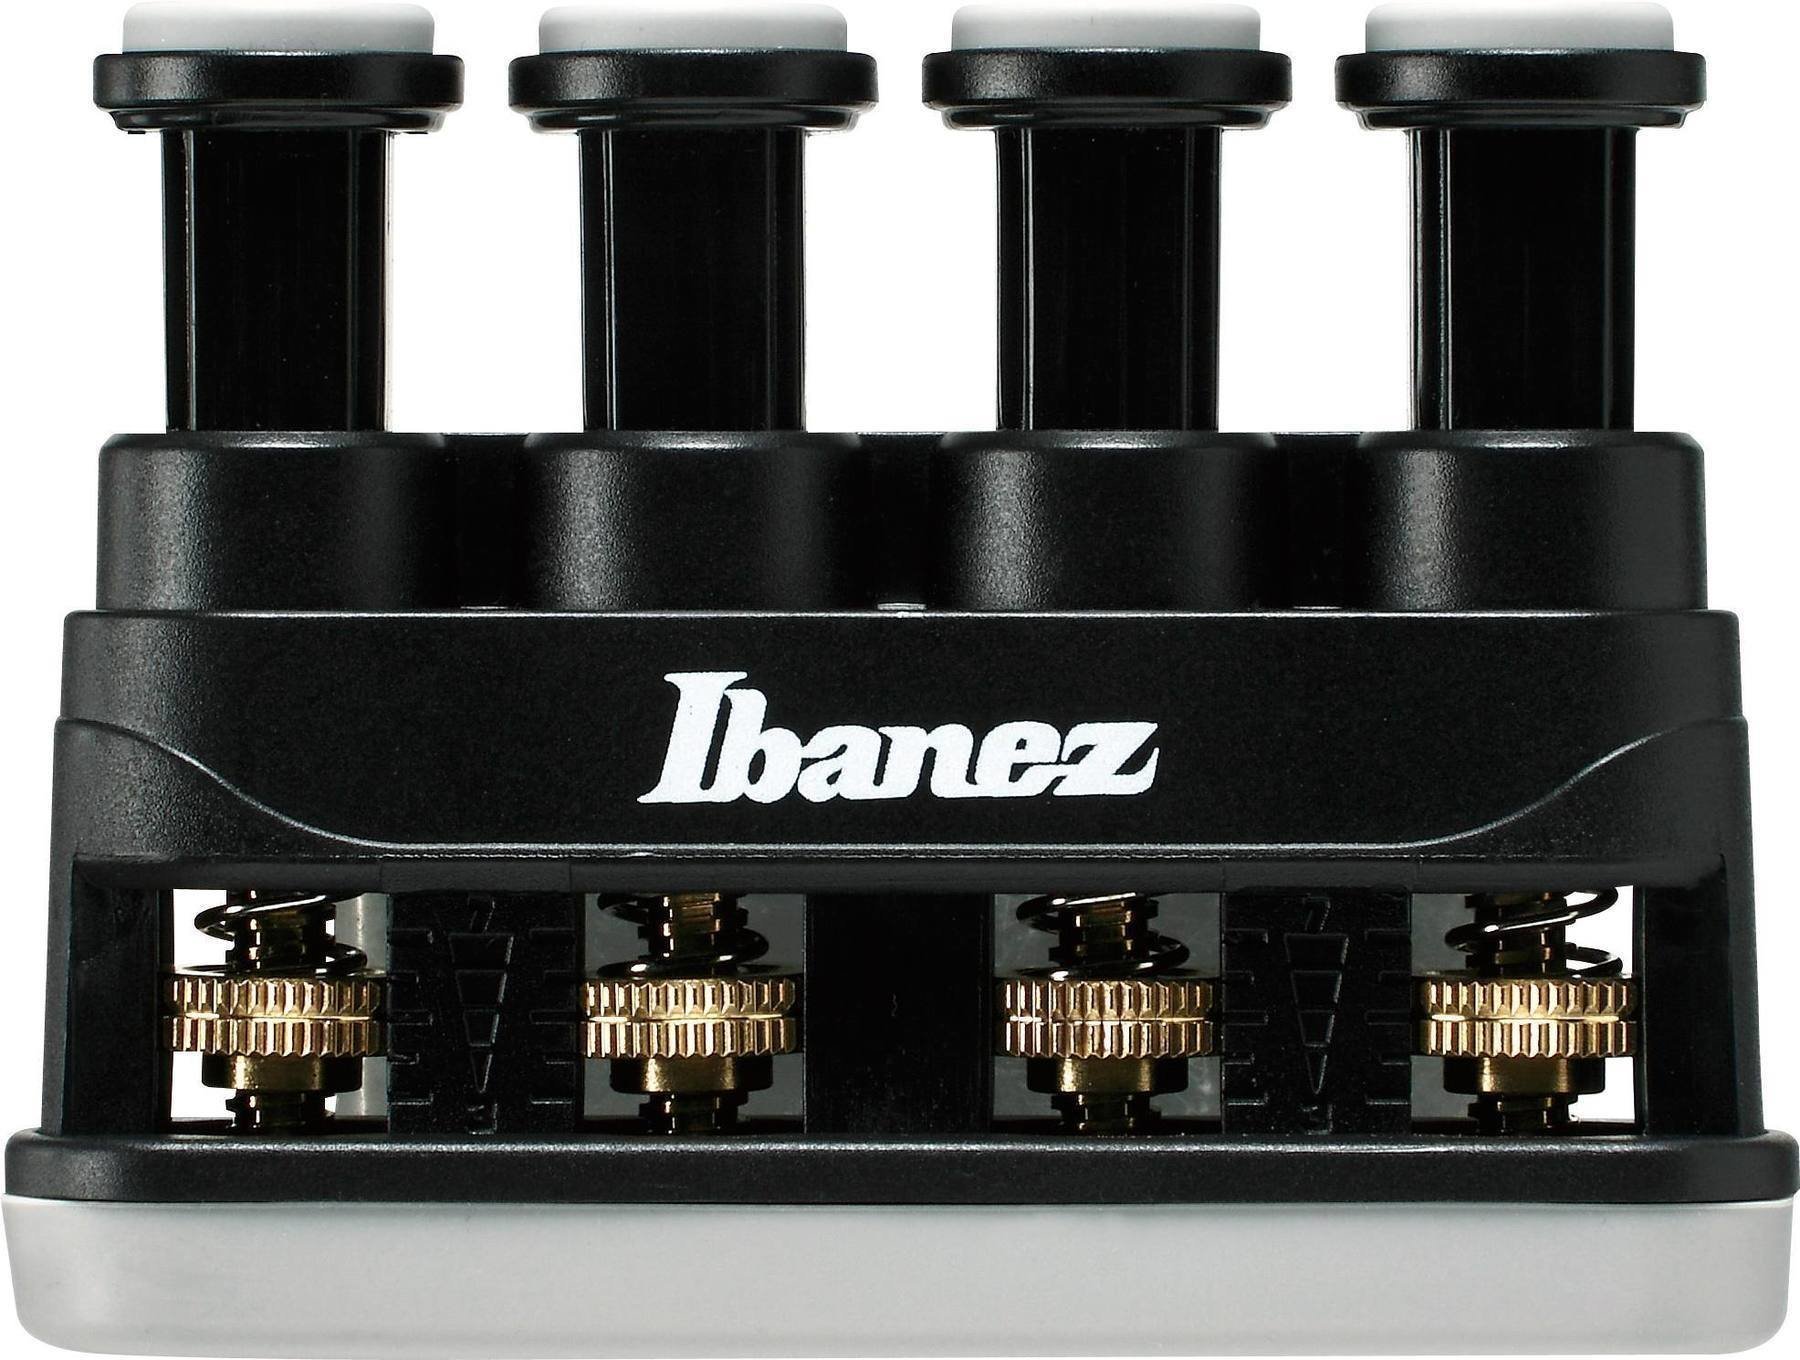 Ibanez IFT20 Ibanez